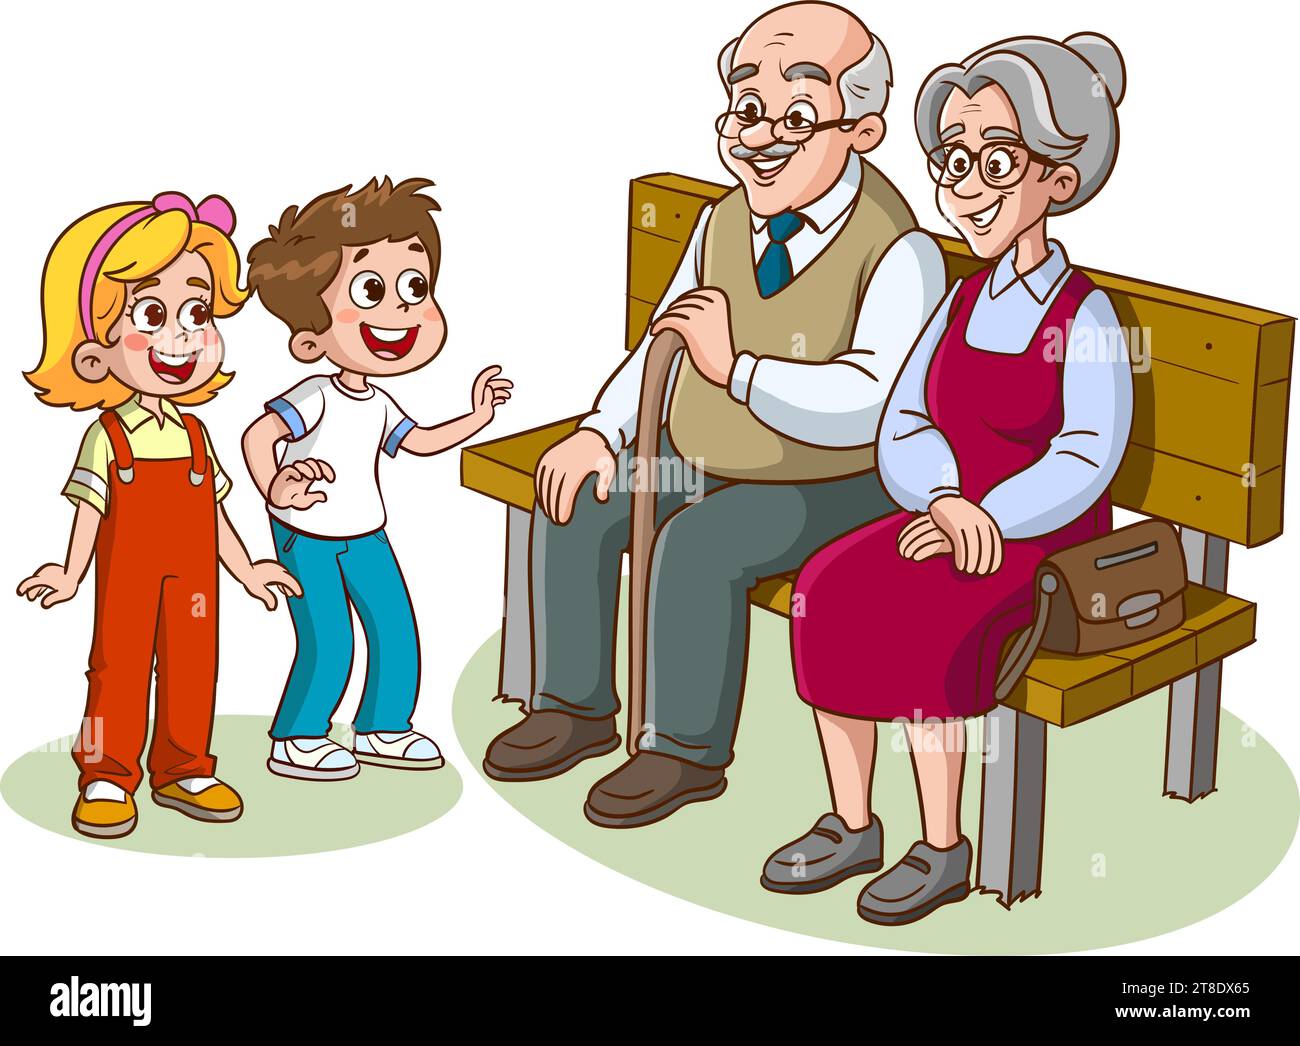 Großelternteil sitzt auf Bank und Enkelkind-Comic-Vektor Stock Vektor